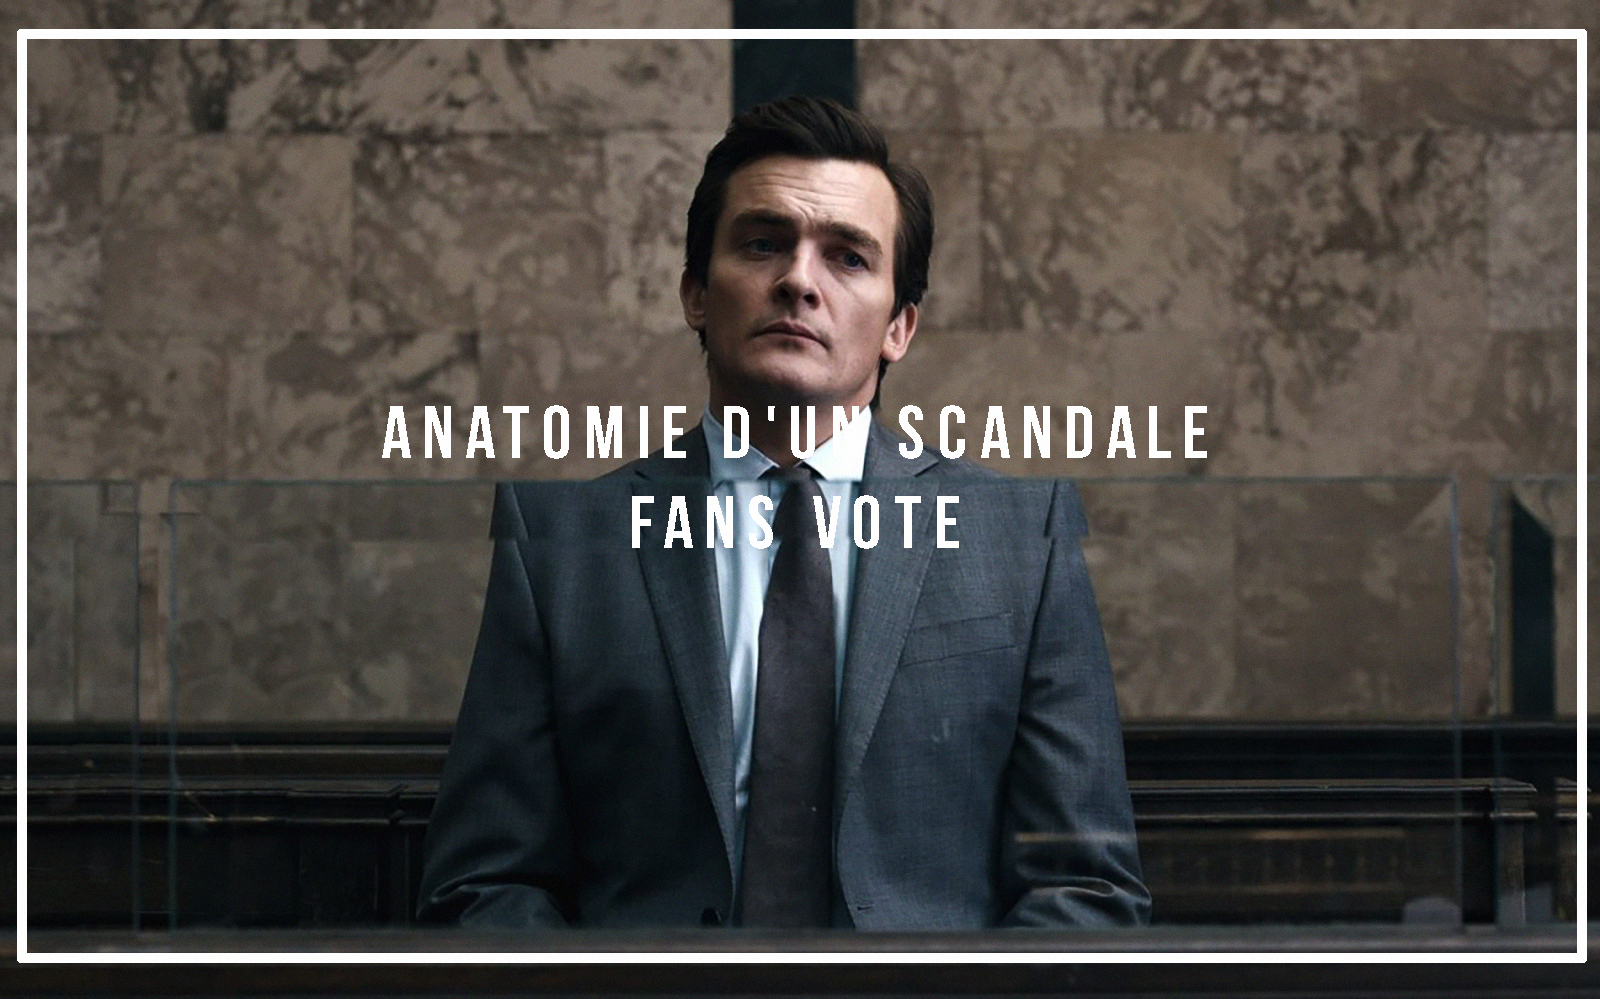 स्क्यान्डलको एनाटॉमी: उत्कृष्ट अभिनेता र पात्रहरू छनौट गर्न मतदान गर्नुहोस्